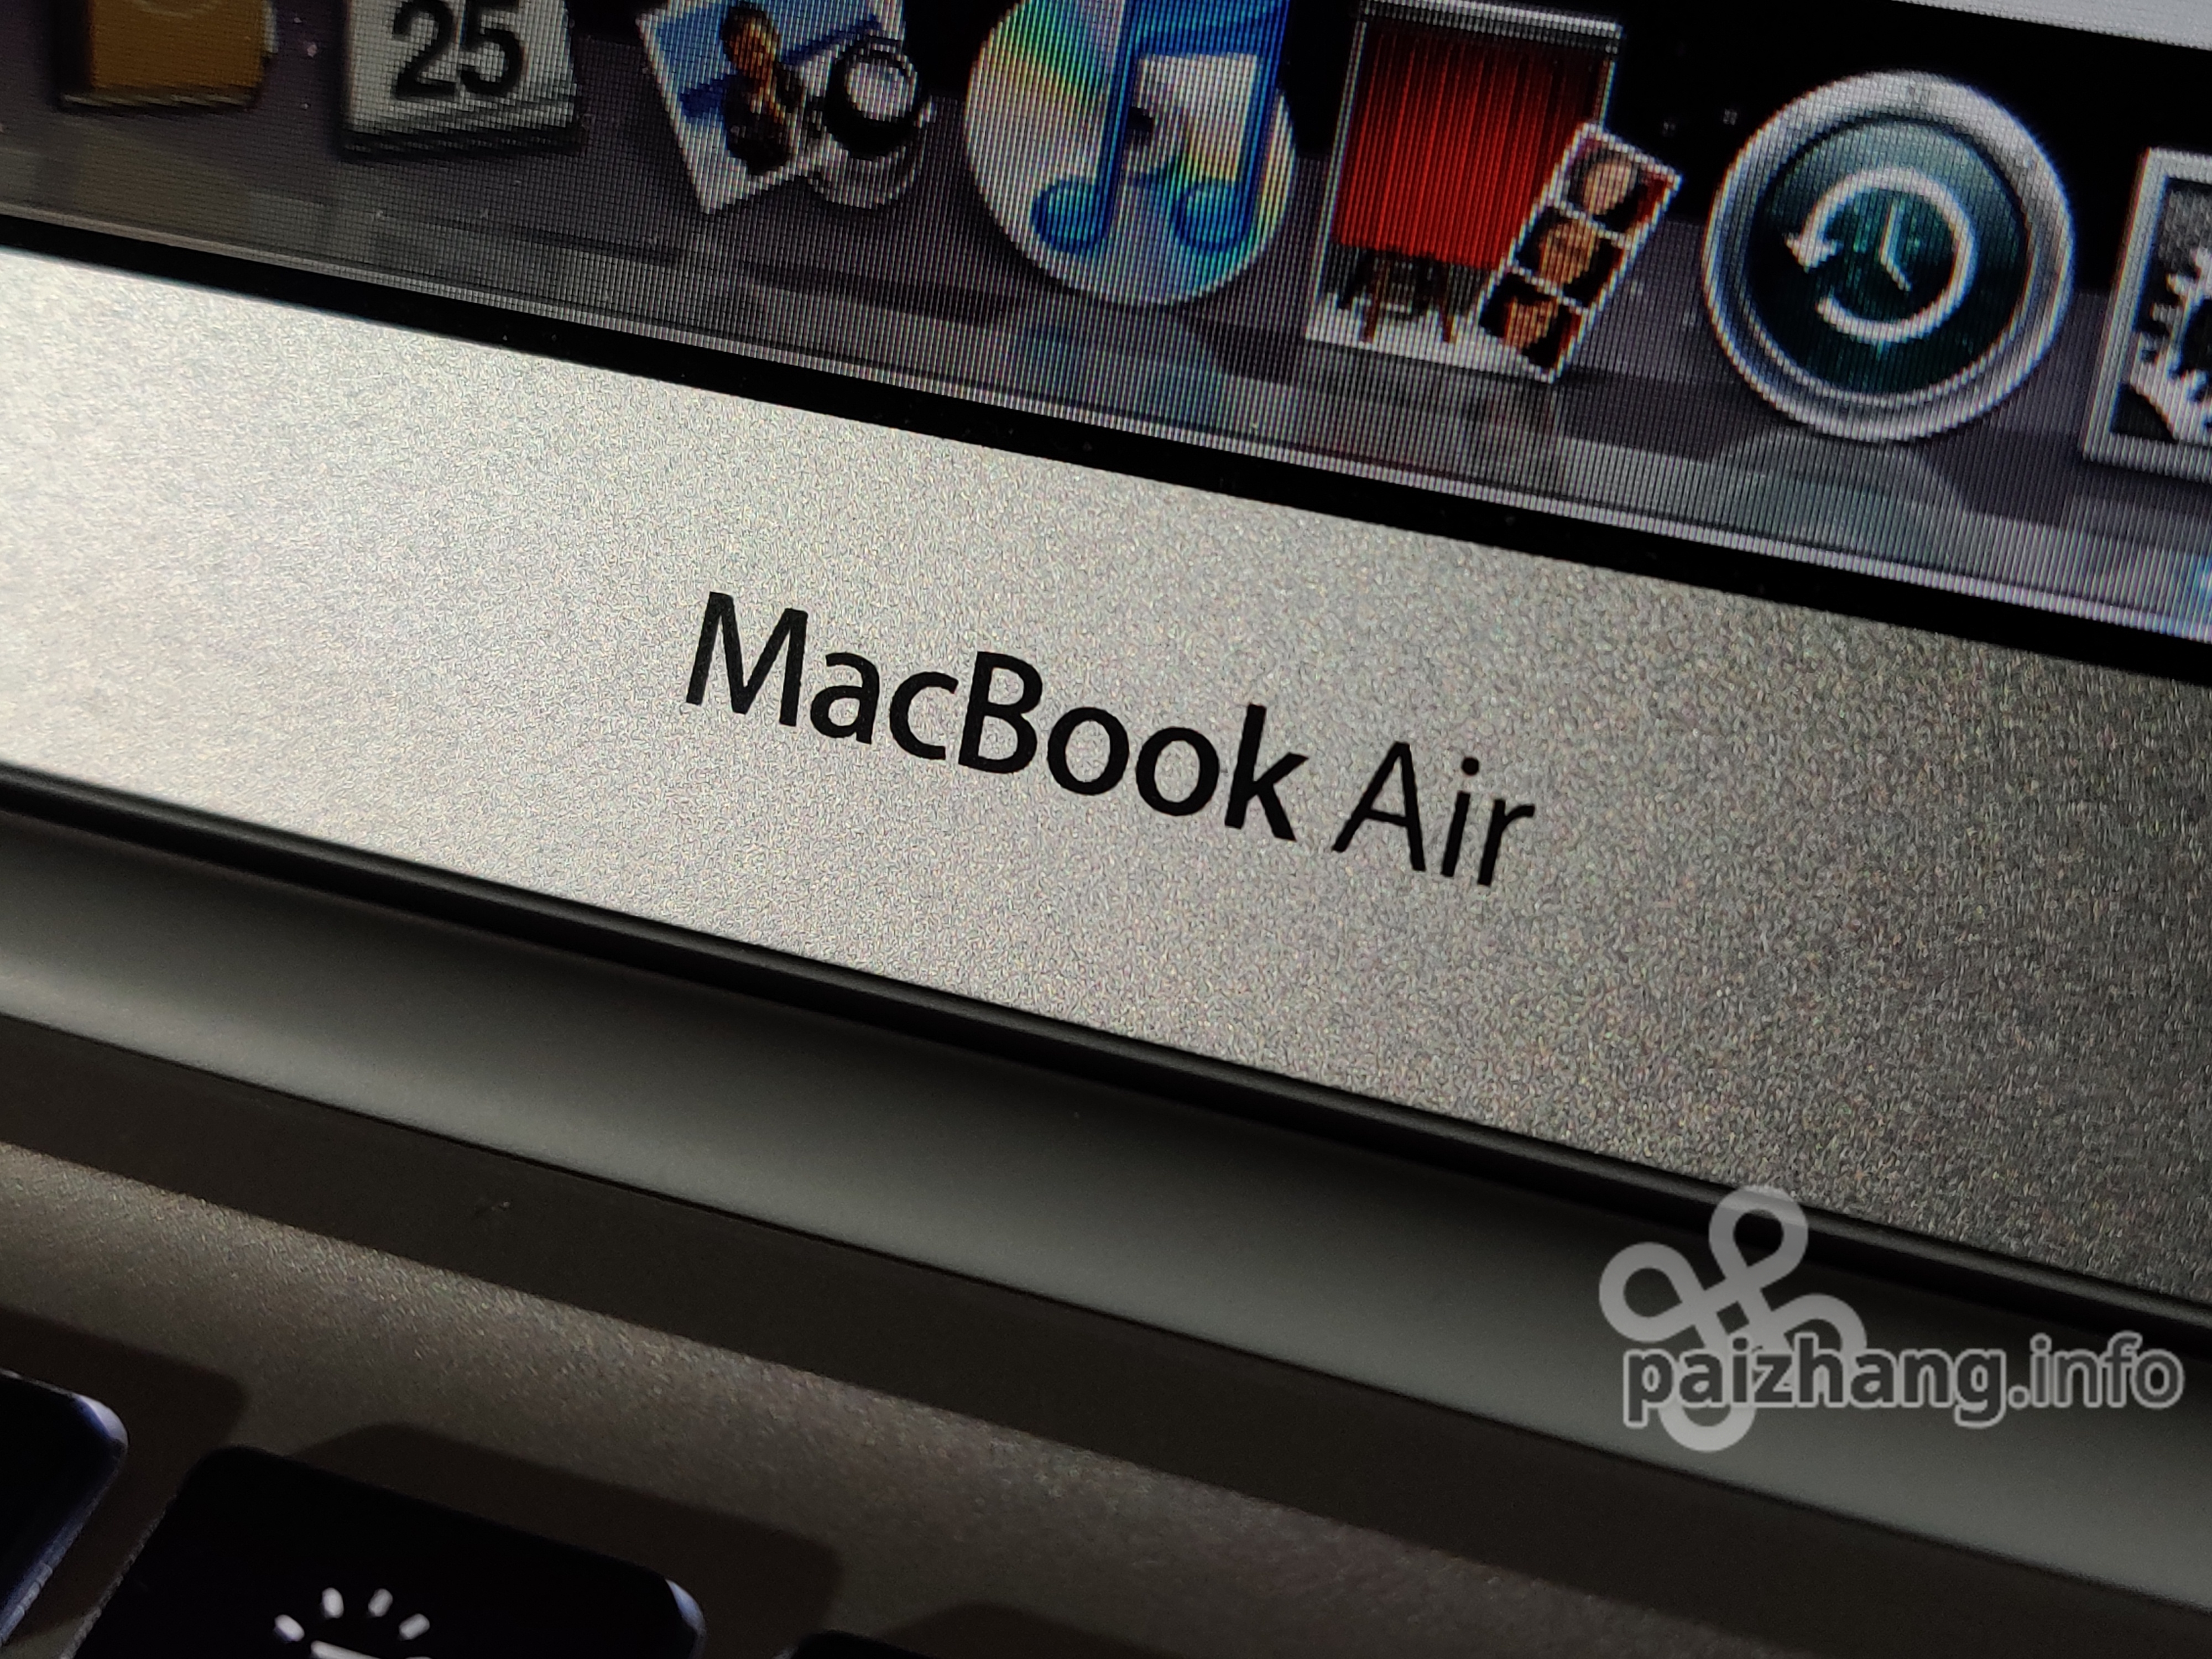 纸袋中拿出的电脑，第一代MacBook Air（2008）体验| paizhang.info